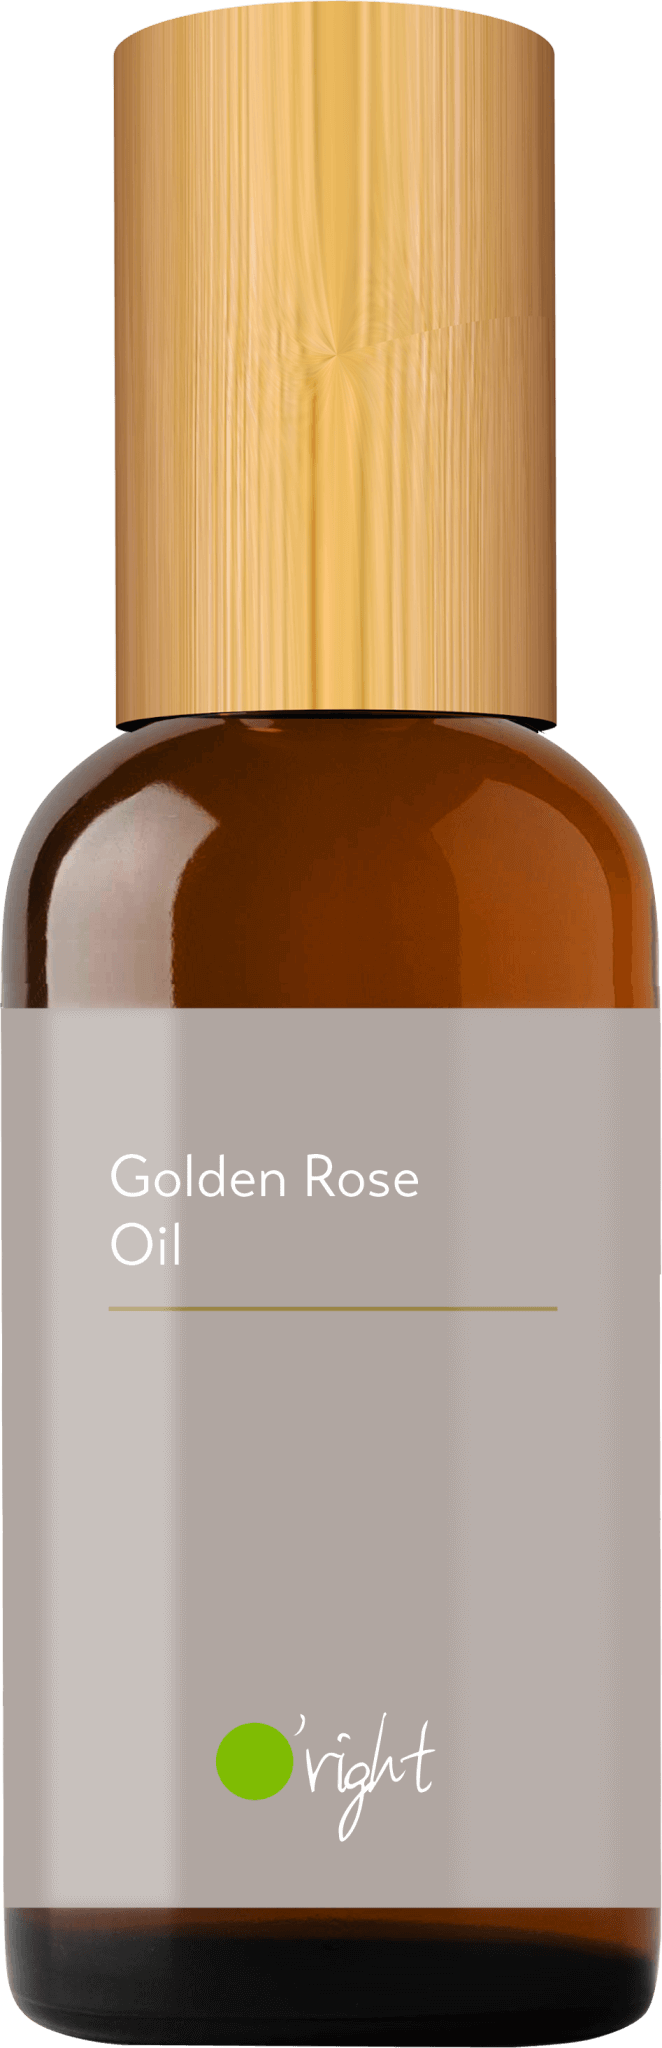 Golden Rose Oil 100ml 1